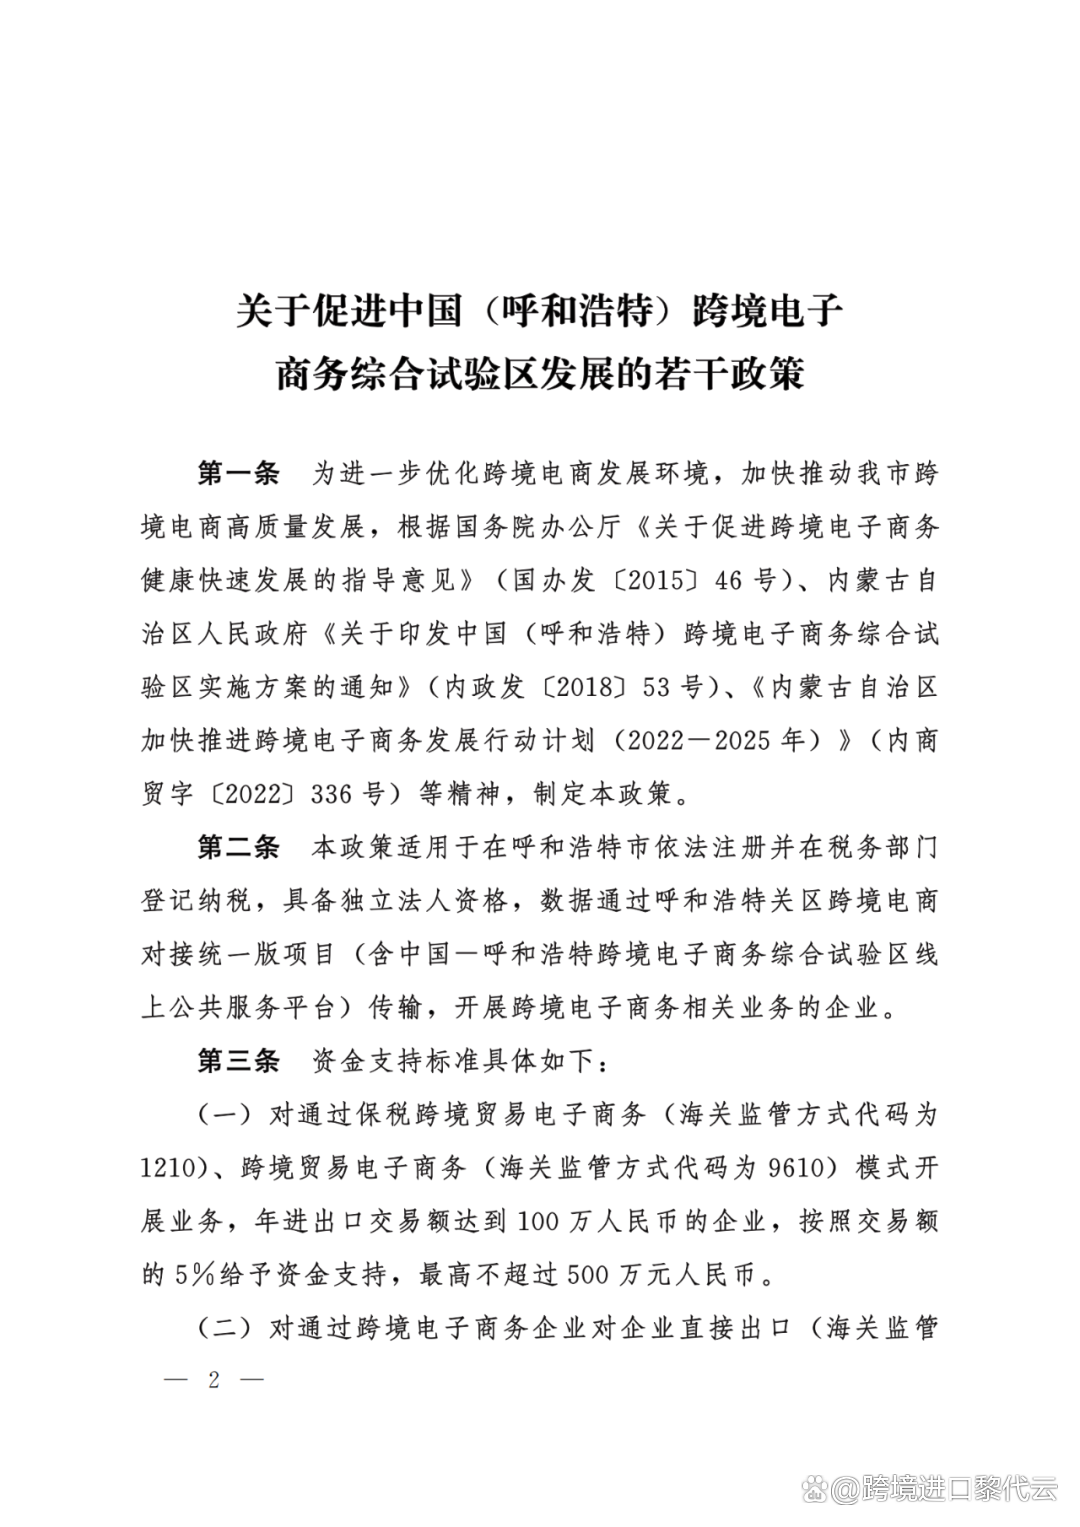 最高500万！呼和浩特<a href='https://www.zhouxiaohui.cn/kuajing/
' target='_blank'>跨境电商</a>新补贴政策出台了！（附原文）-第2张图片-周小辉博客